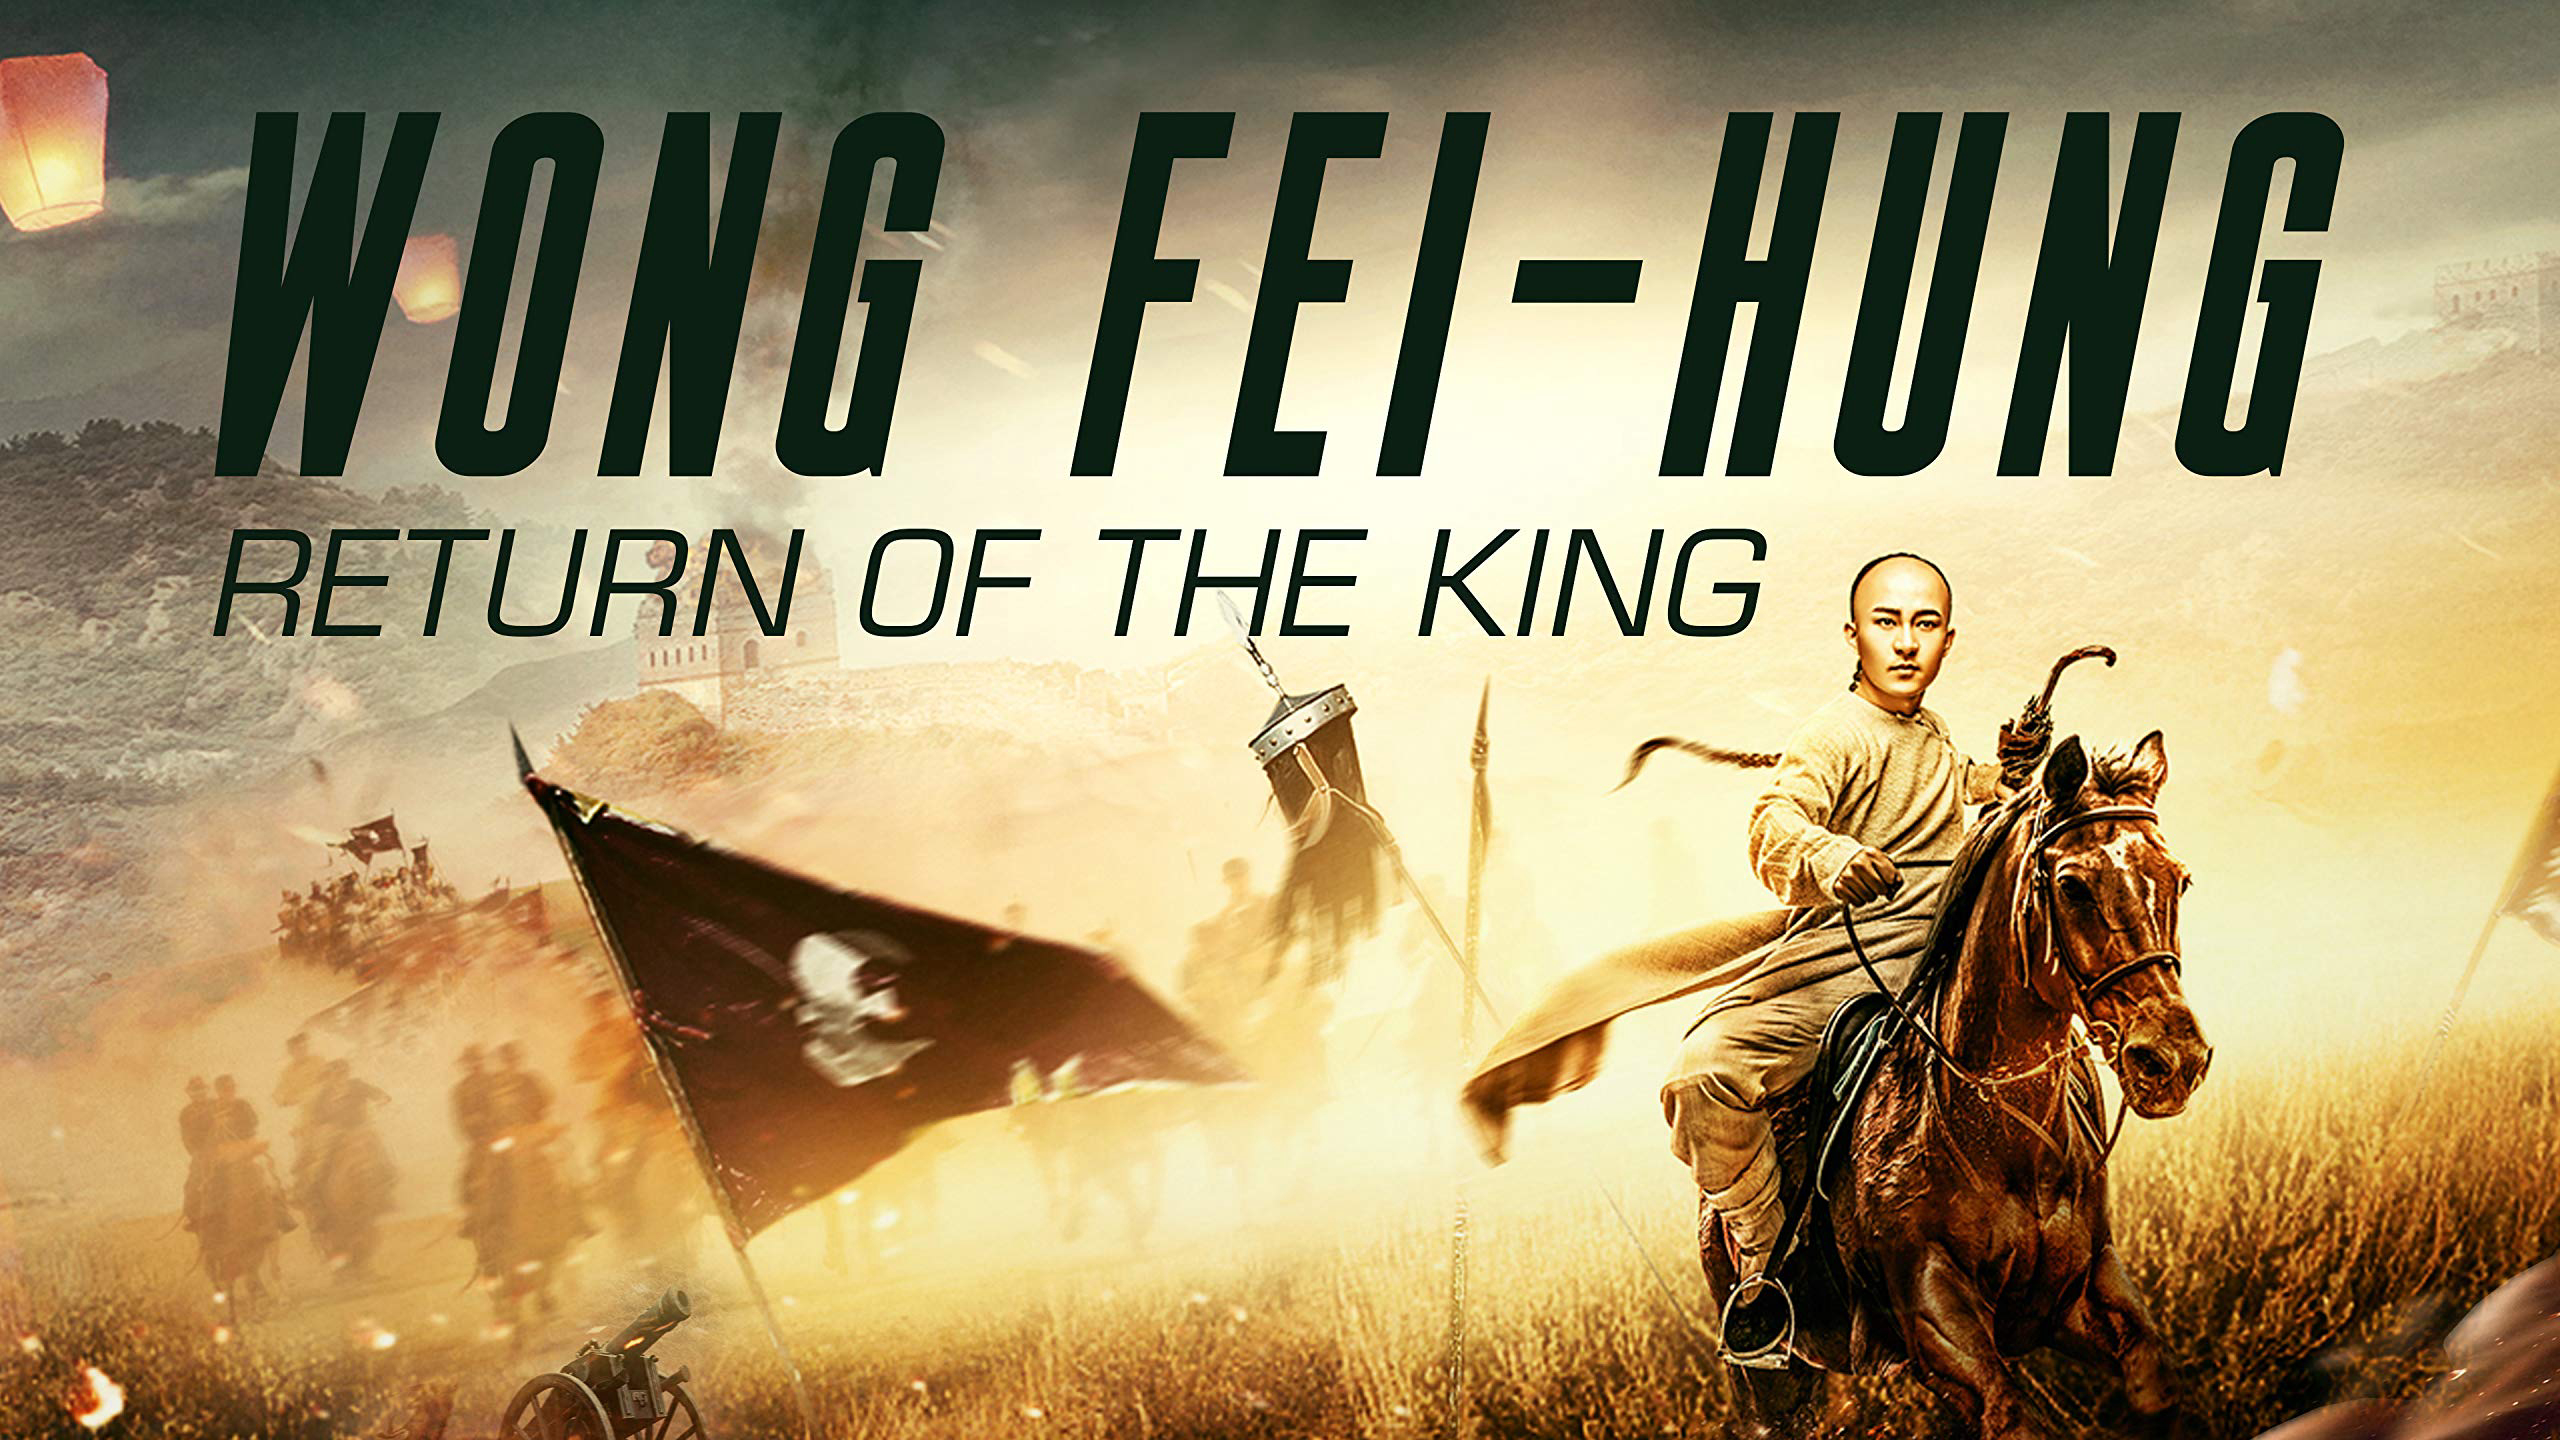 Xem Phim Hoàng Phi Hồng: Vương Giả Trở Về, Wong Fei Hung: Return of the King 2017